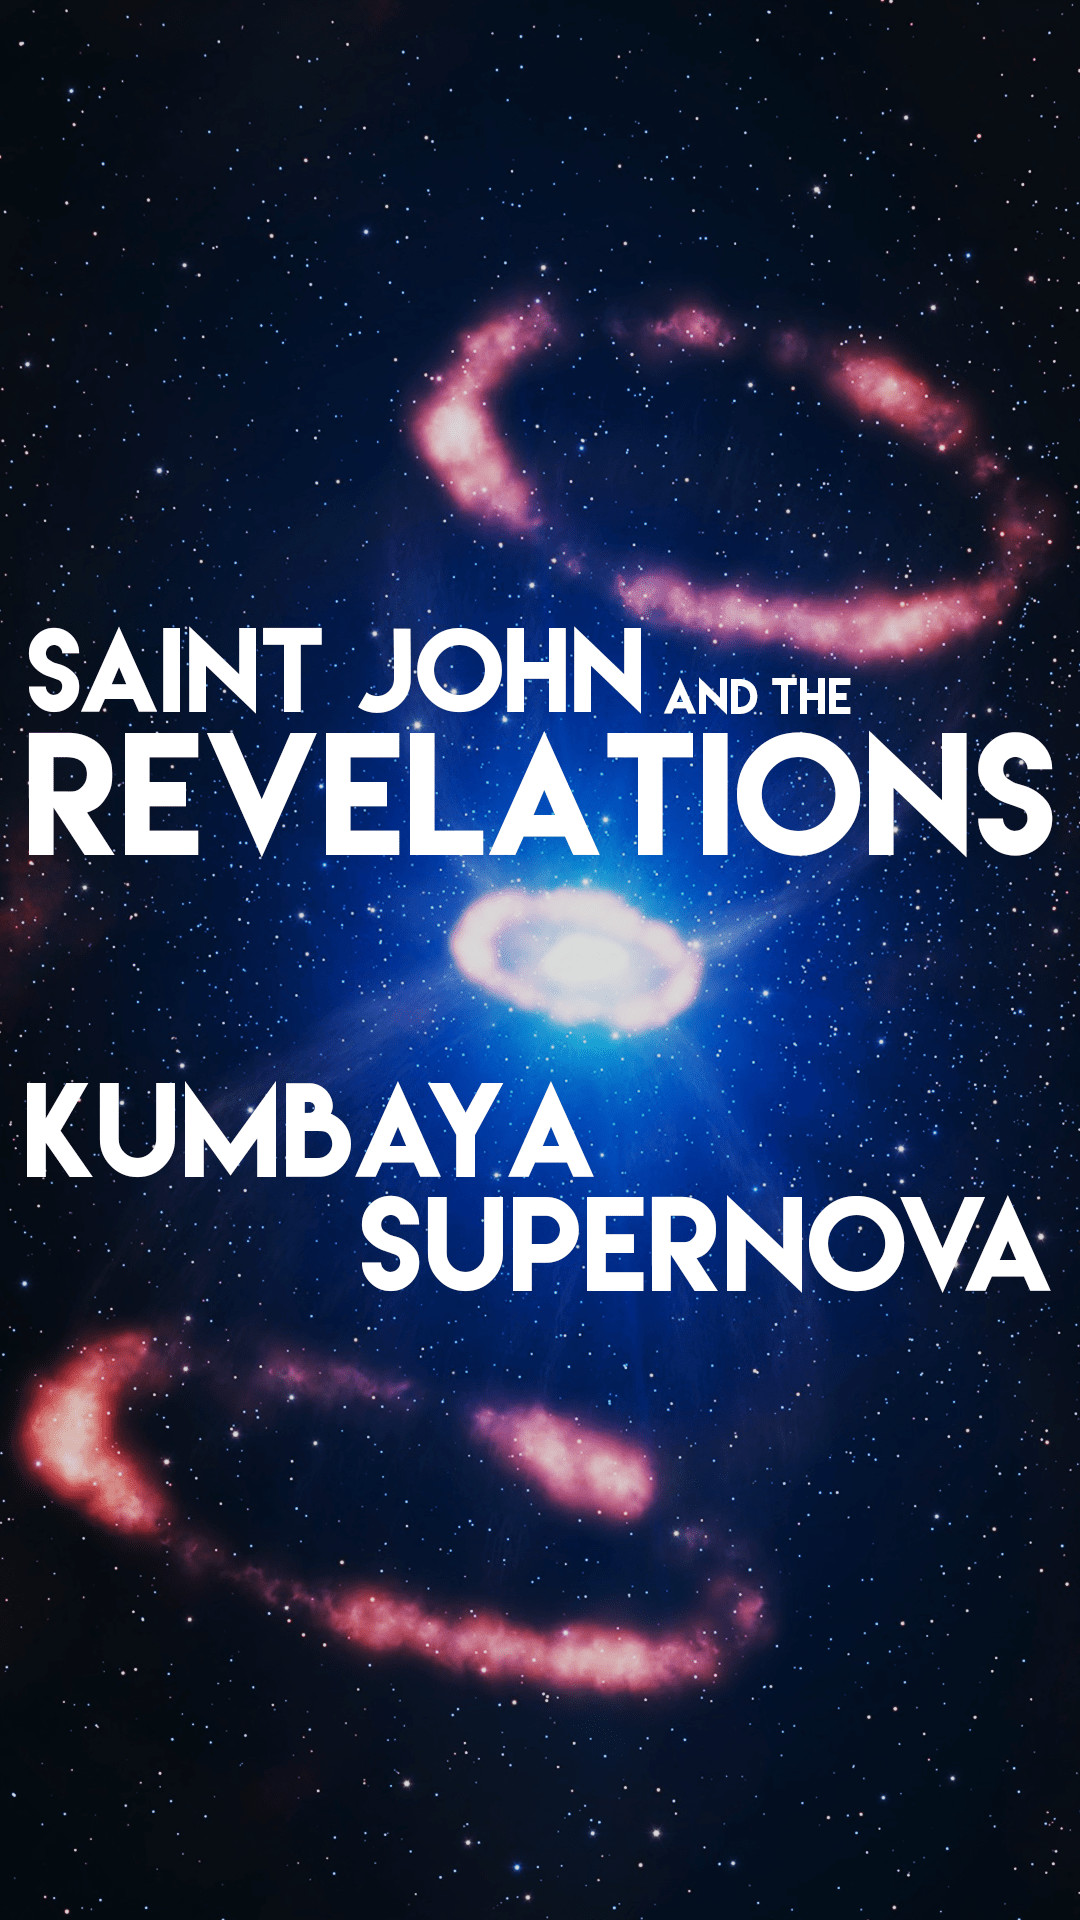 1080x1920 Saint John and the Revelations Kumbaya Supernova Smartphone Wallpaper